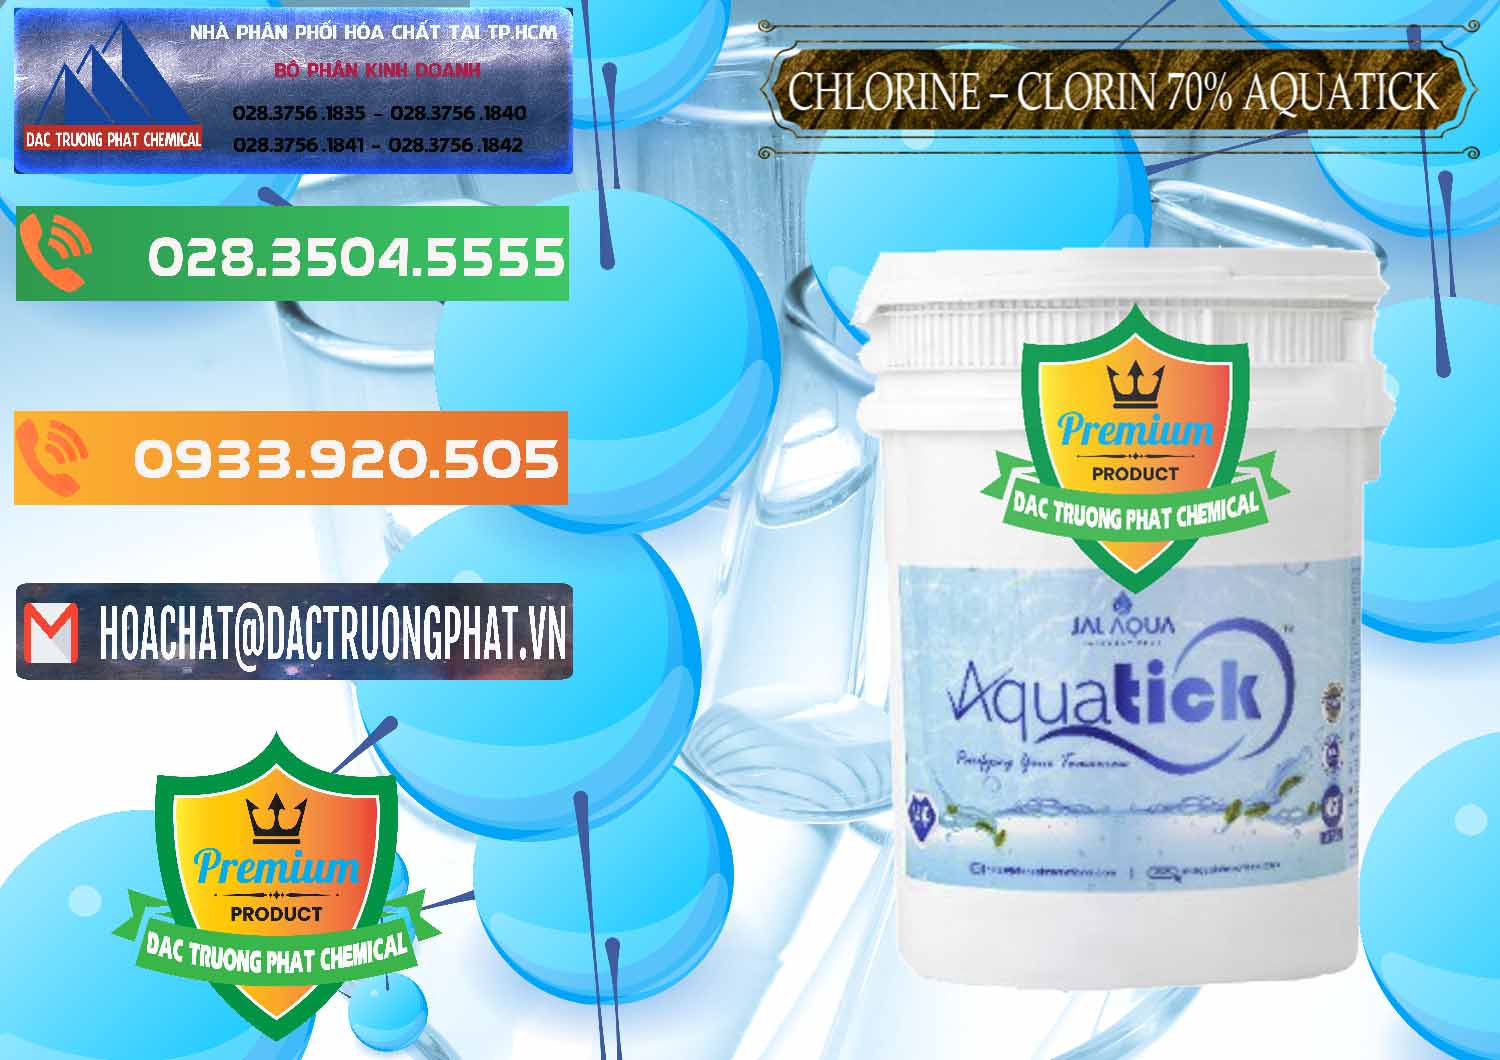 Đơn vị chuyên cung cấp ( bán ) Chlorine – Clorin 70% Aquatick Thùng Cao Jal Aqua Ấn Độ India - 0237 - Cung cấp _ phân phối hóa chất tại TP.HCM - hoachatxulynuoc.com.vn